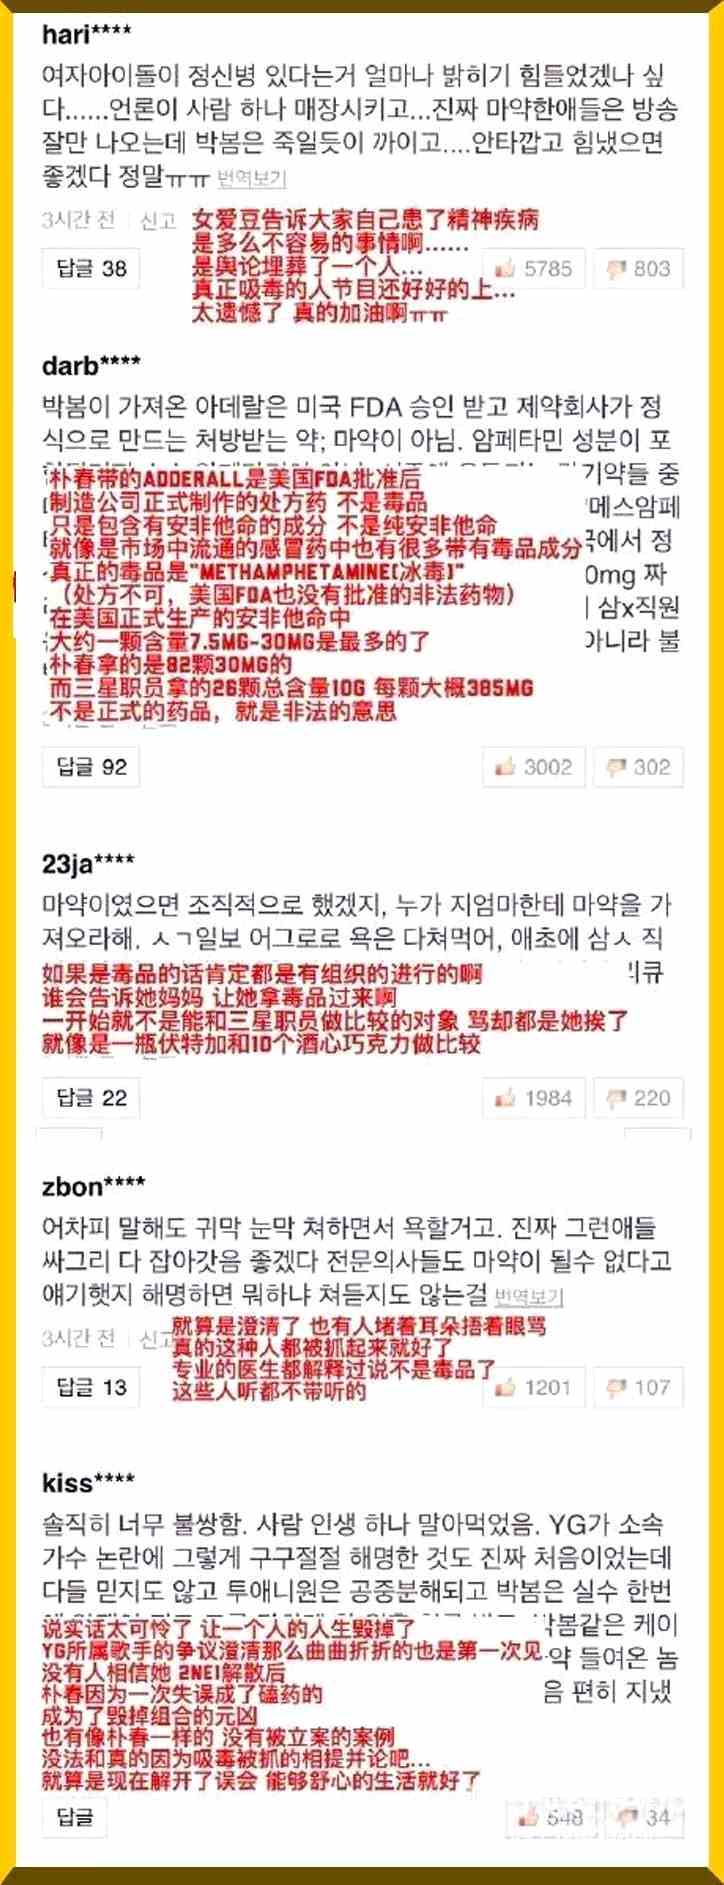 韩星暴涨100倍身价公开辱华 百万中国网友却遭韩媒48小时网络暴力